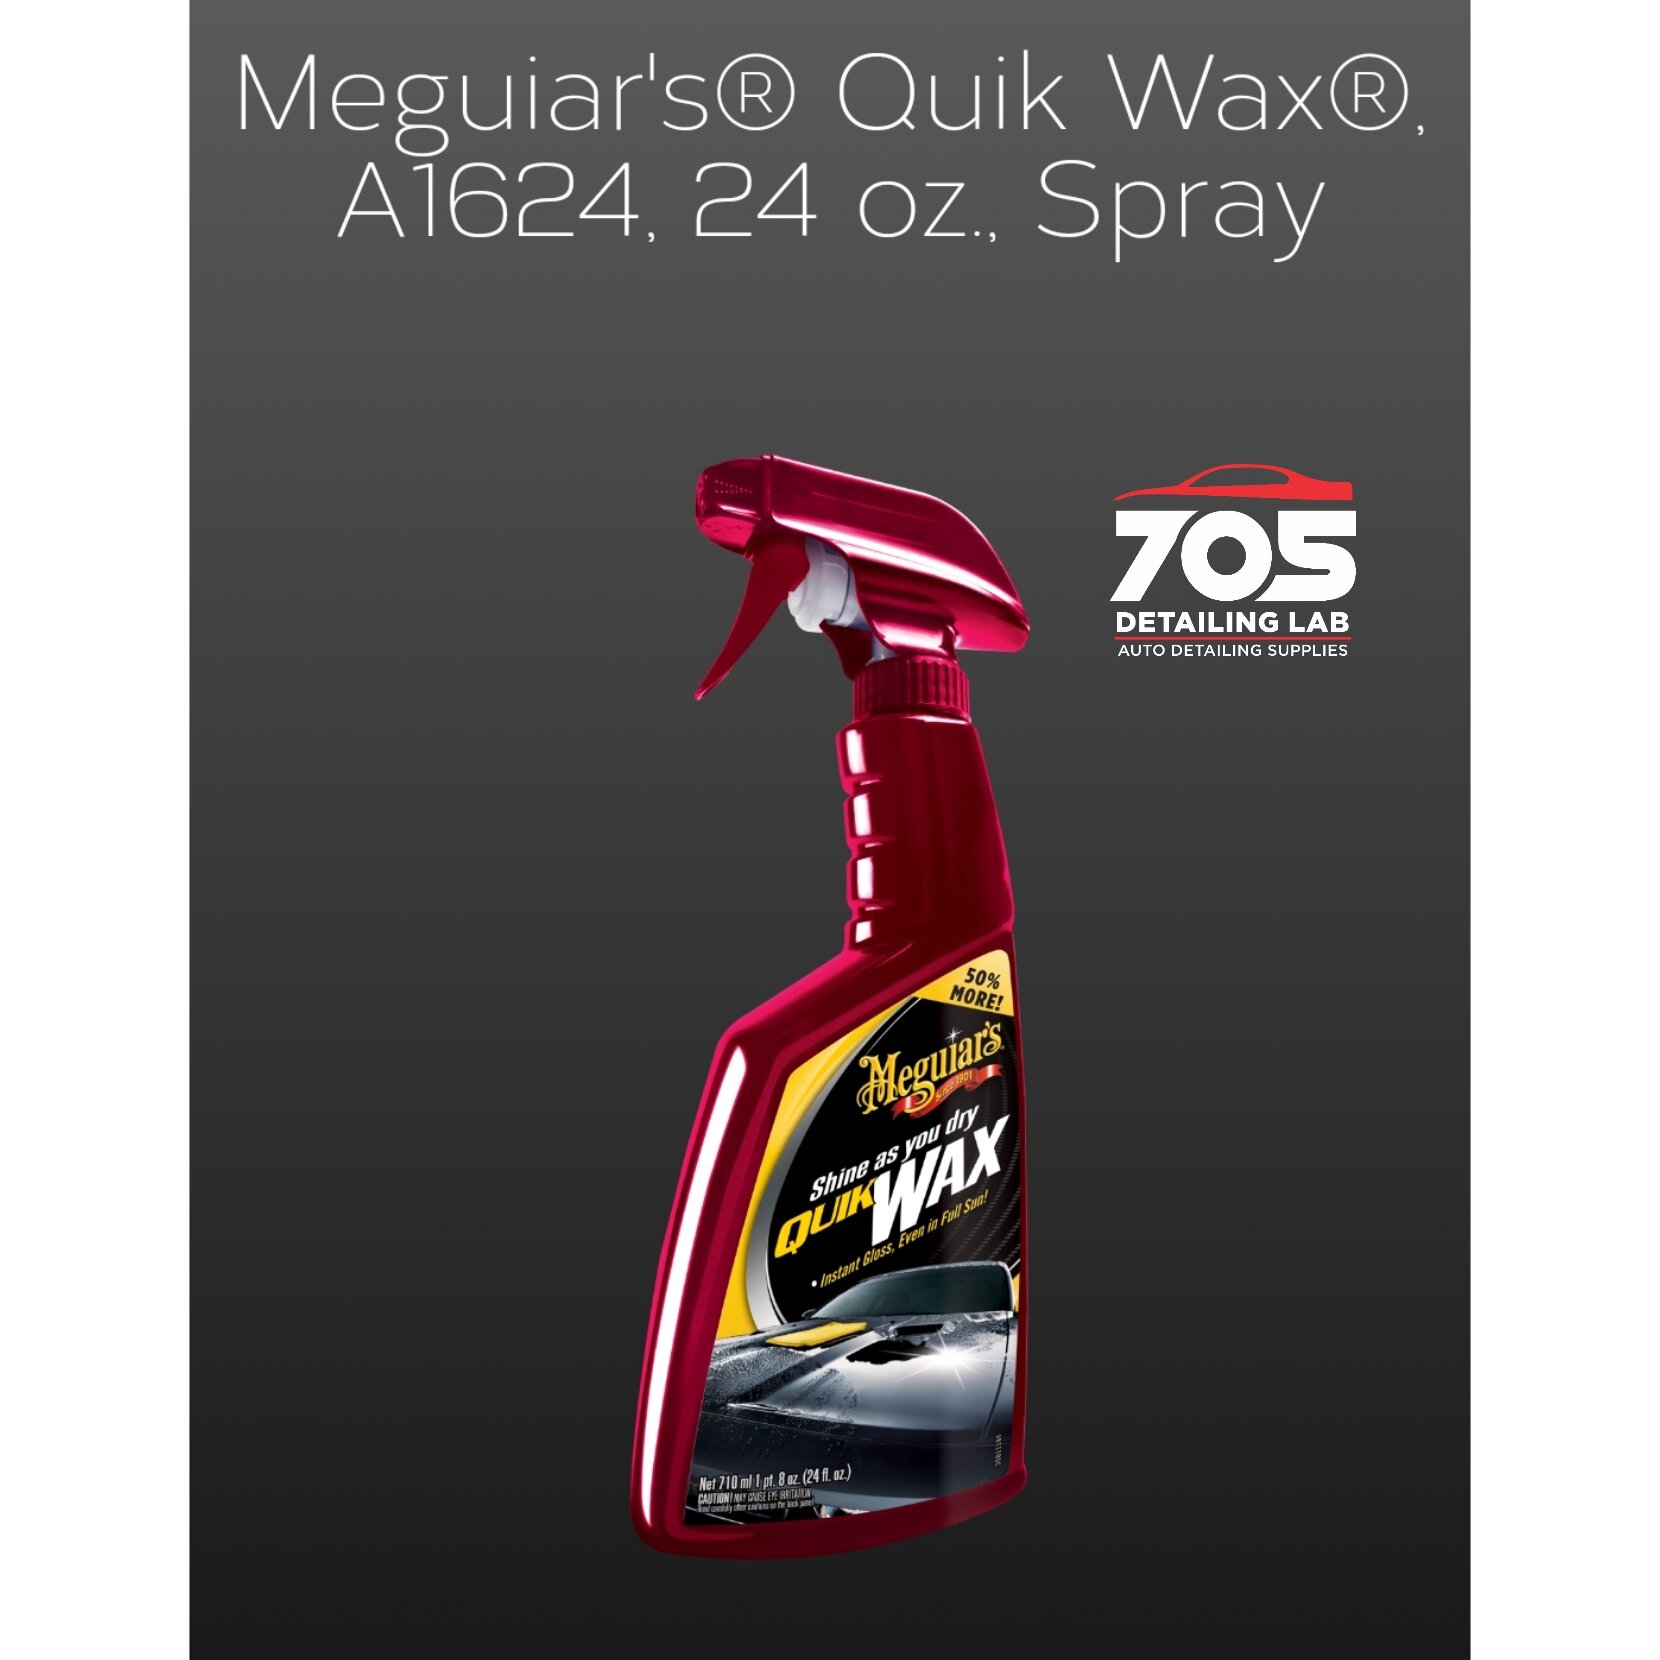 Meguiar's - Meguiars Quik Wax A1624